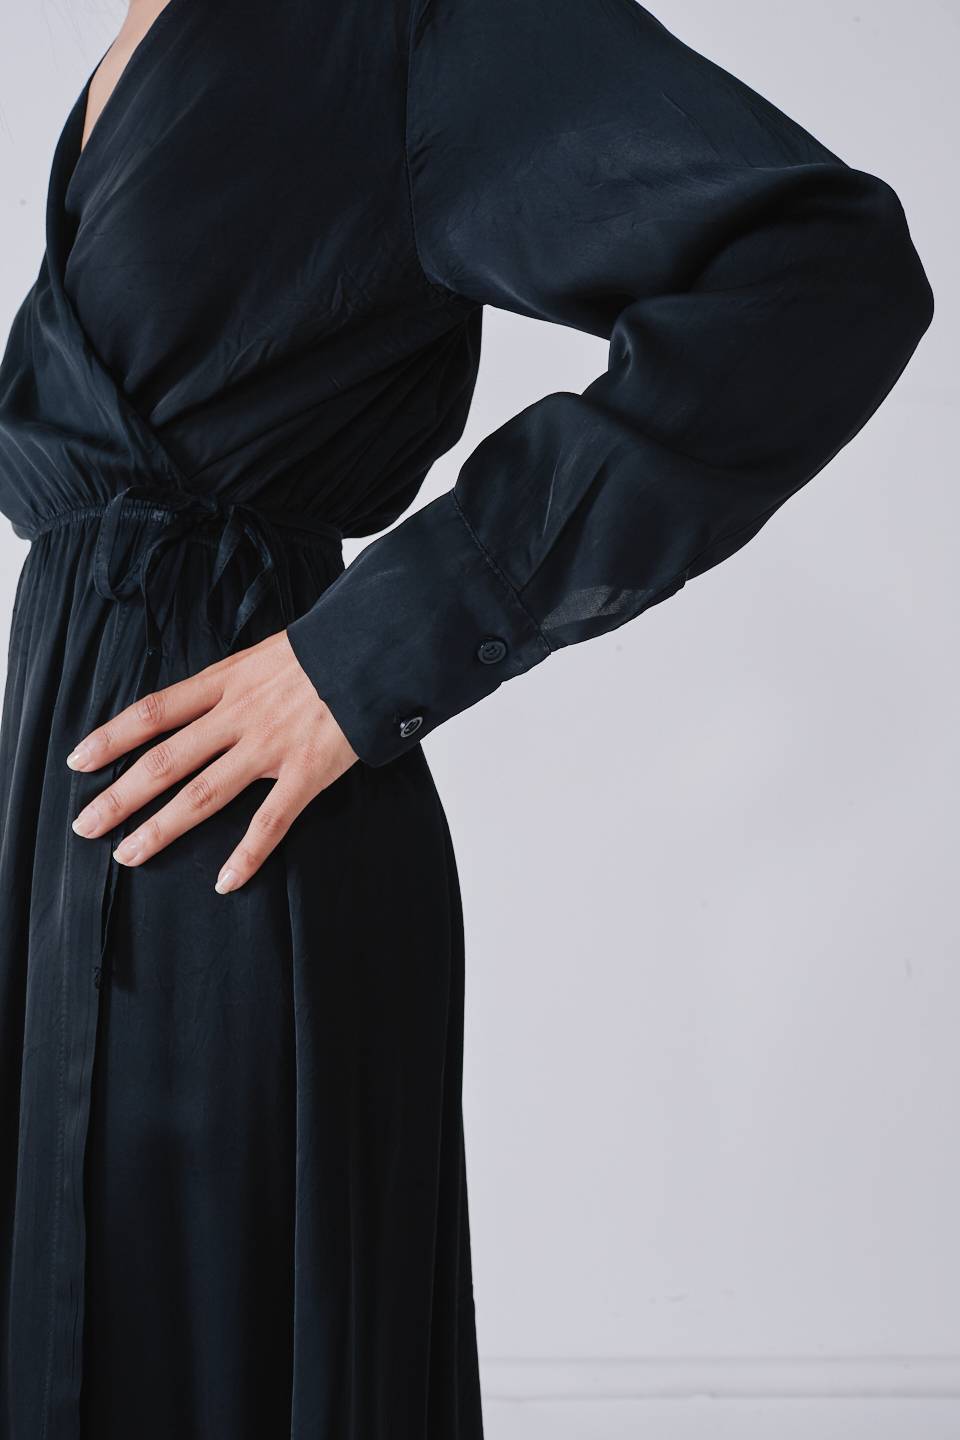 Vestito lungo portafoglio nero - Autunno - Inverno 2022 | Brend